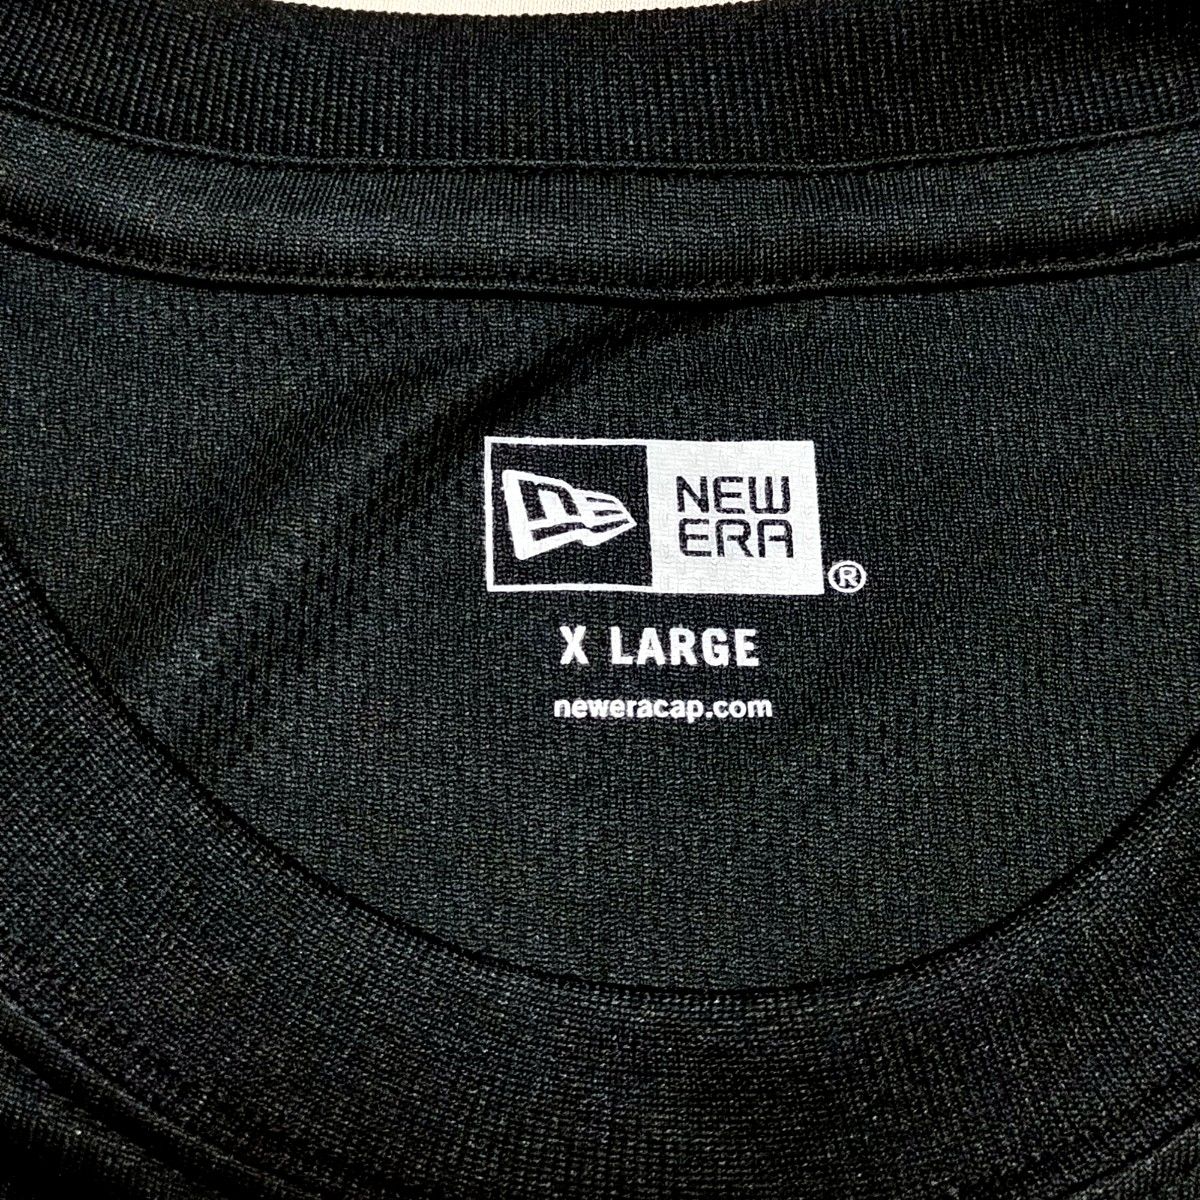 ニューエラ NEW ERA Bリーグ B League サンロッカーズ渋谷トレーニングシャツ